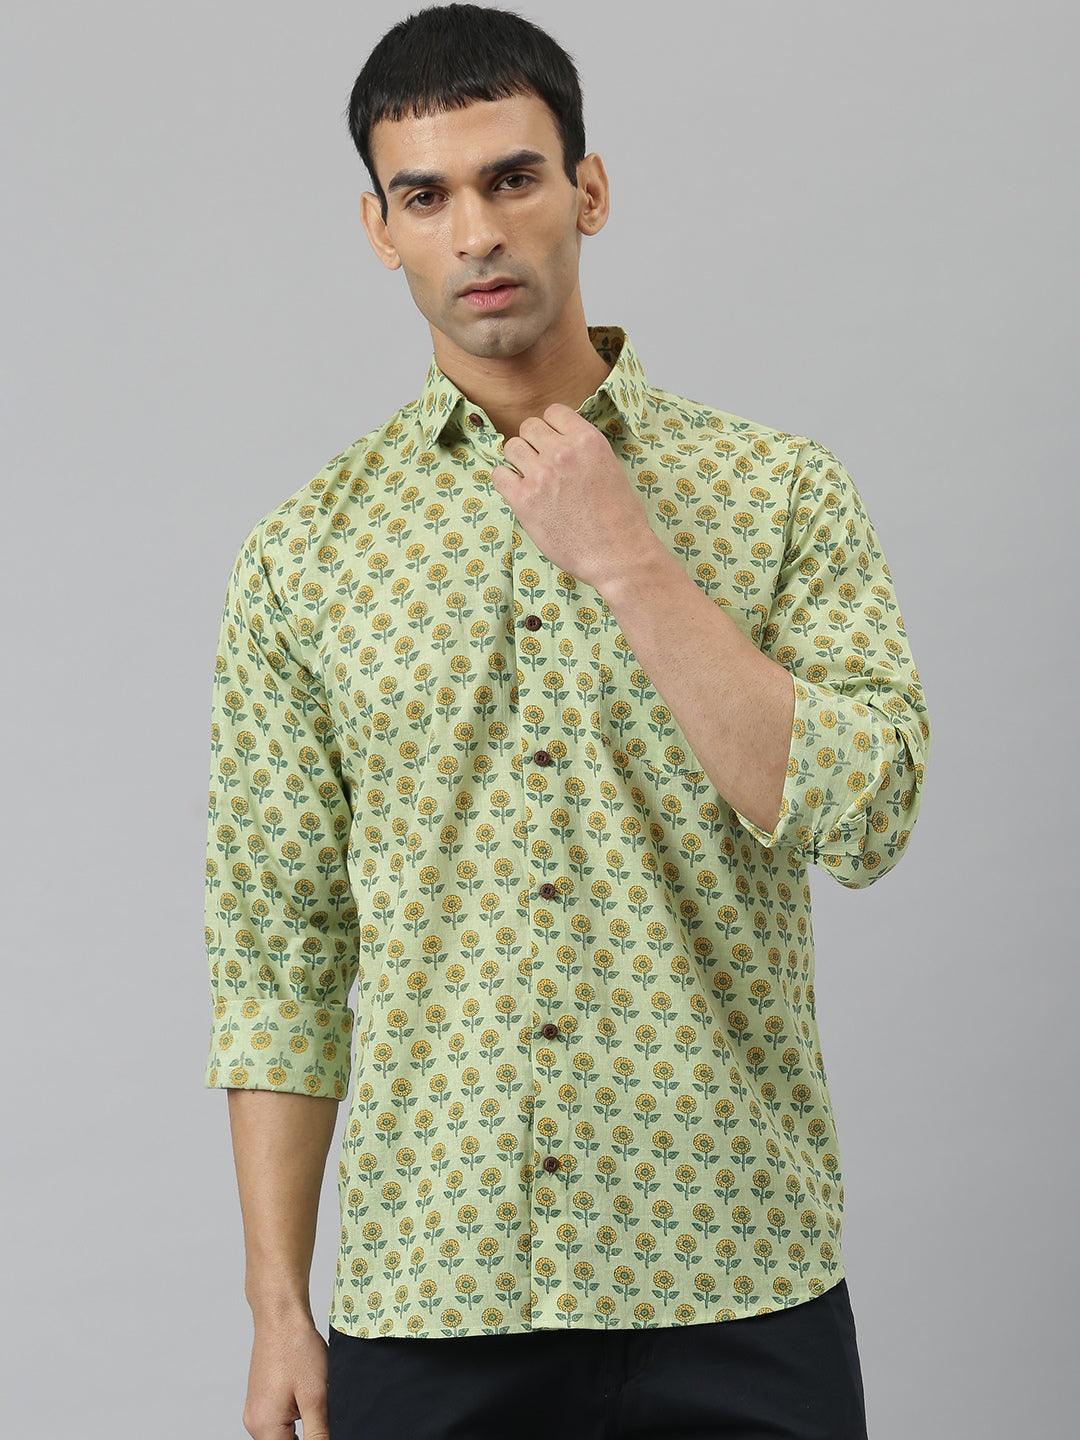 Millennial Men Light Green & Yellow Cotton  Full Sleeve  Shirt for Men-MMF0269 - divenaworld.com